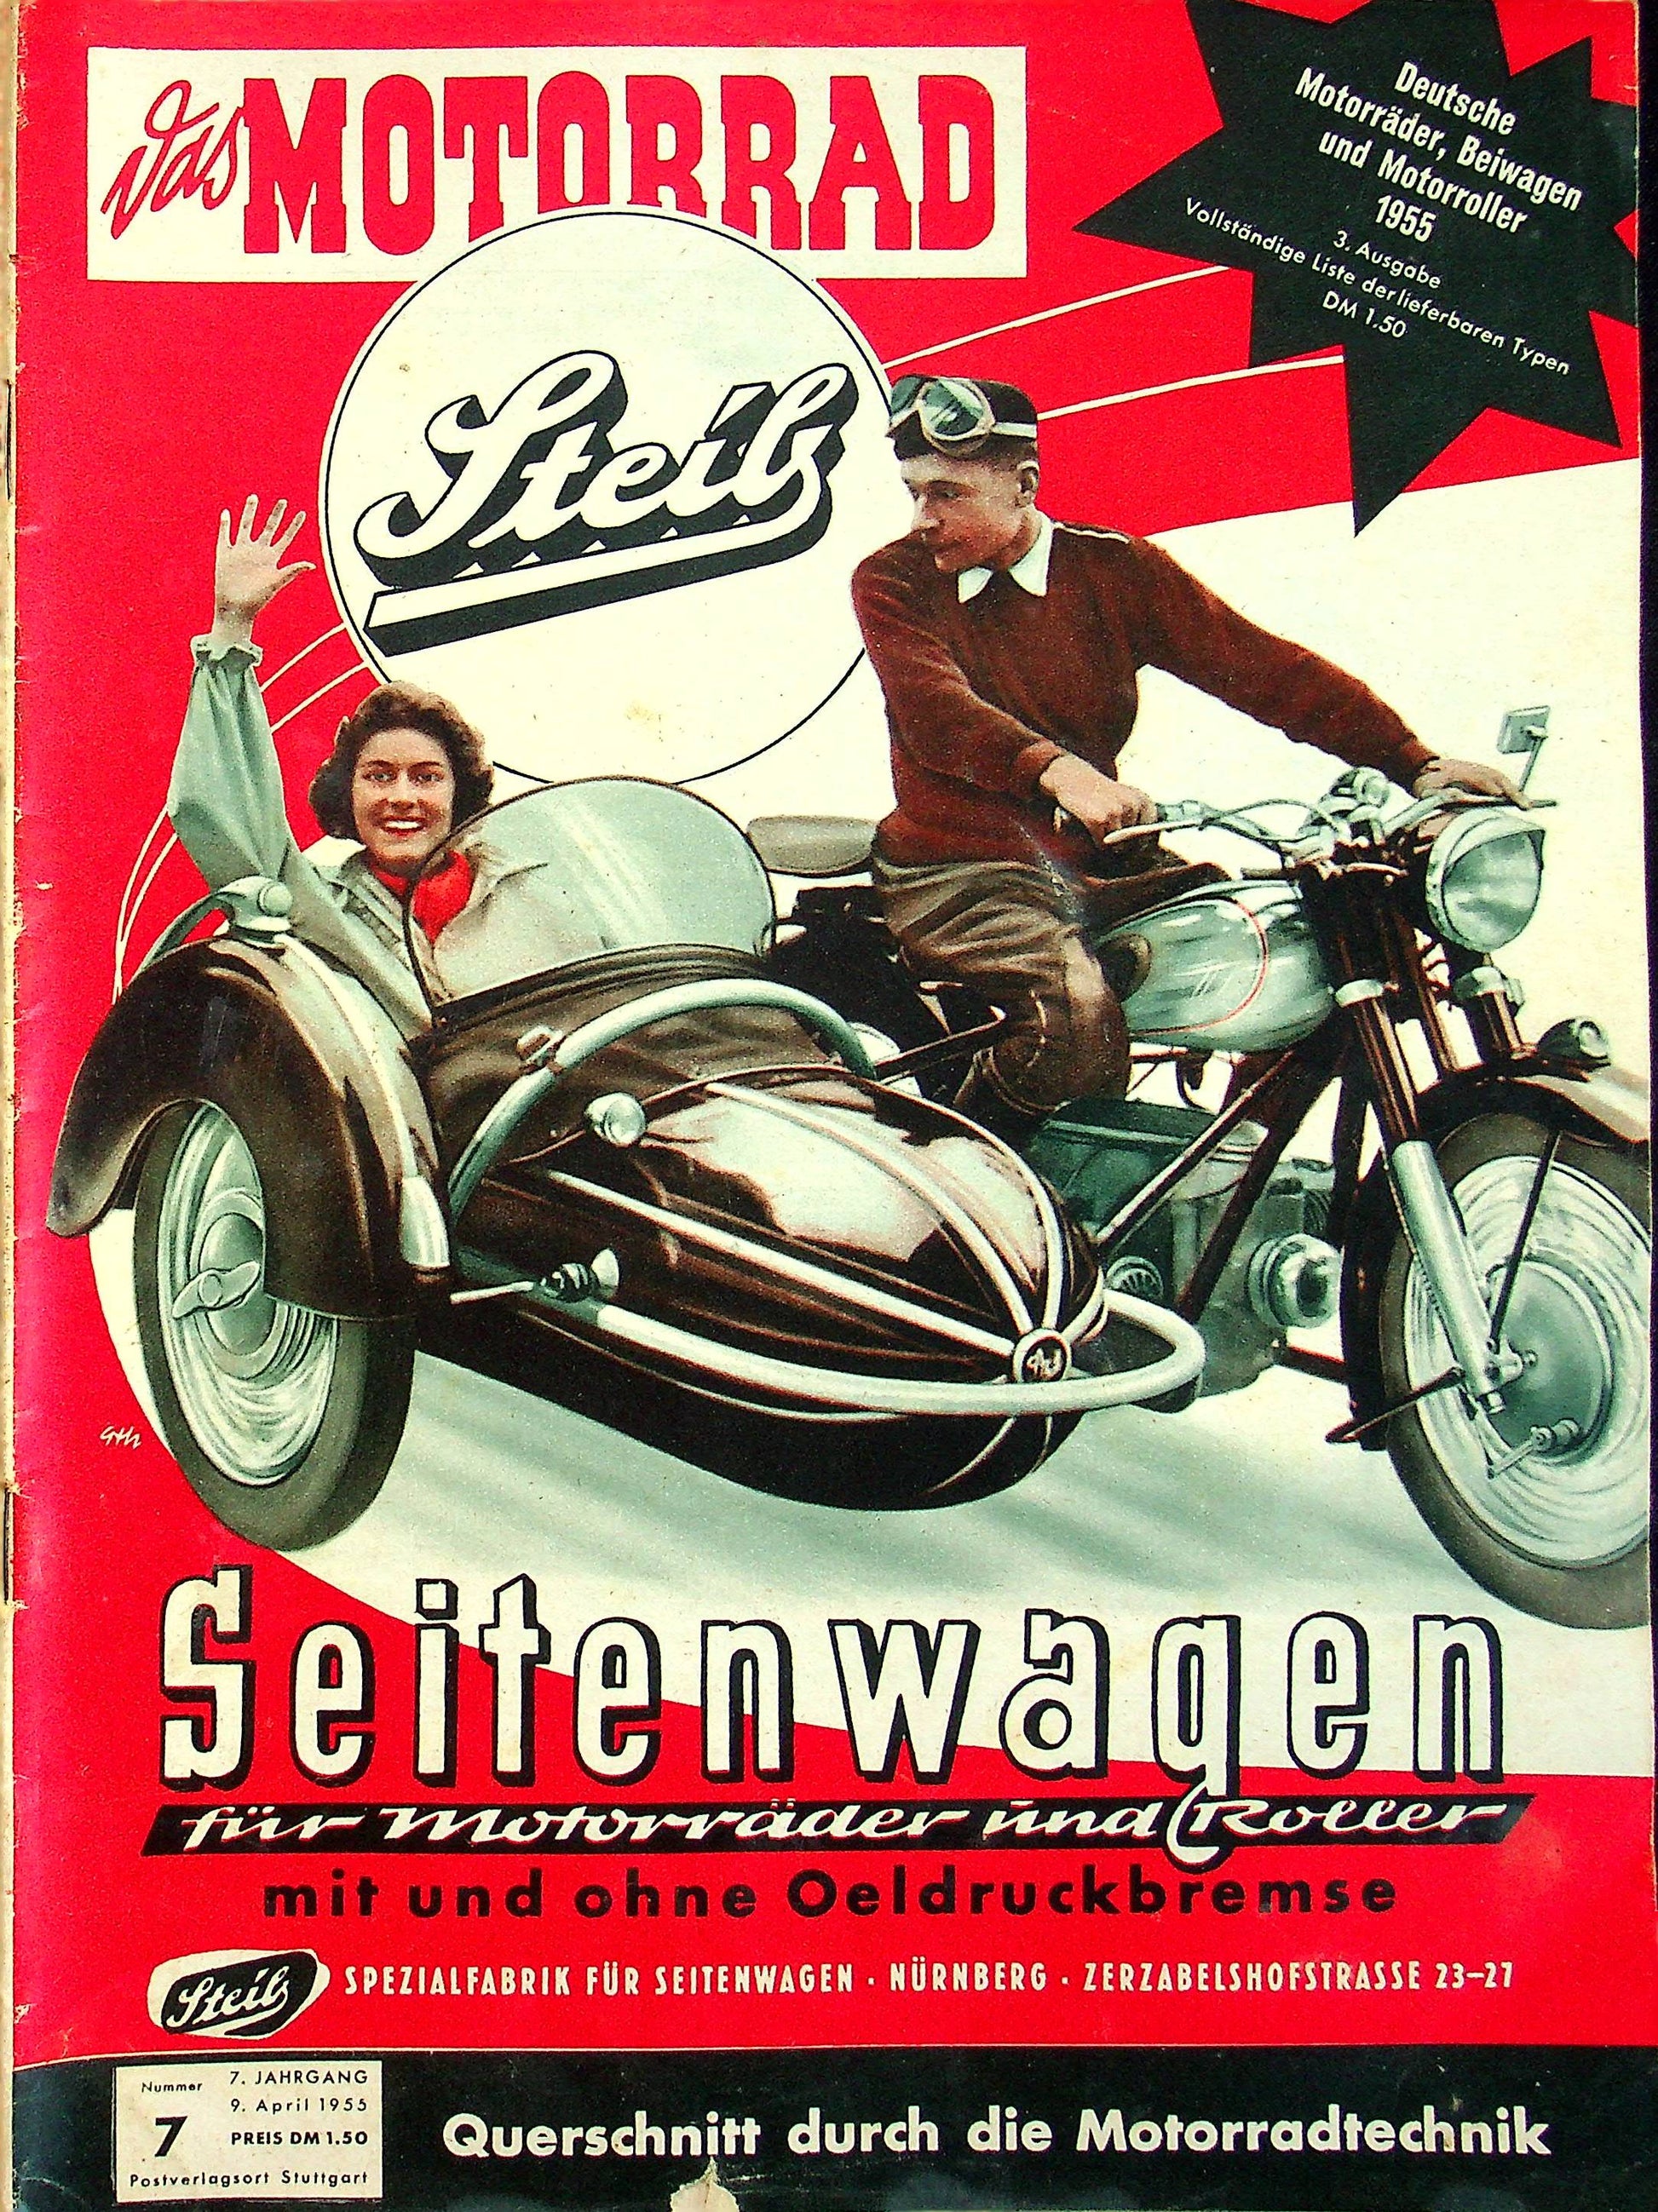 Motorrad 07/1955